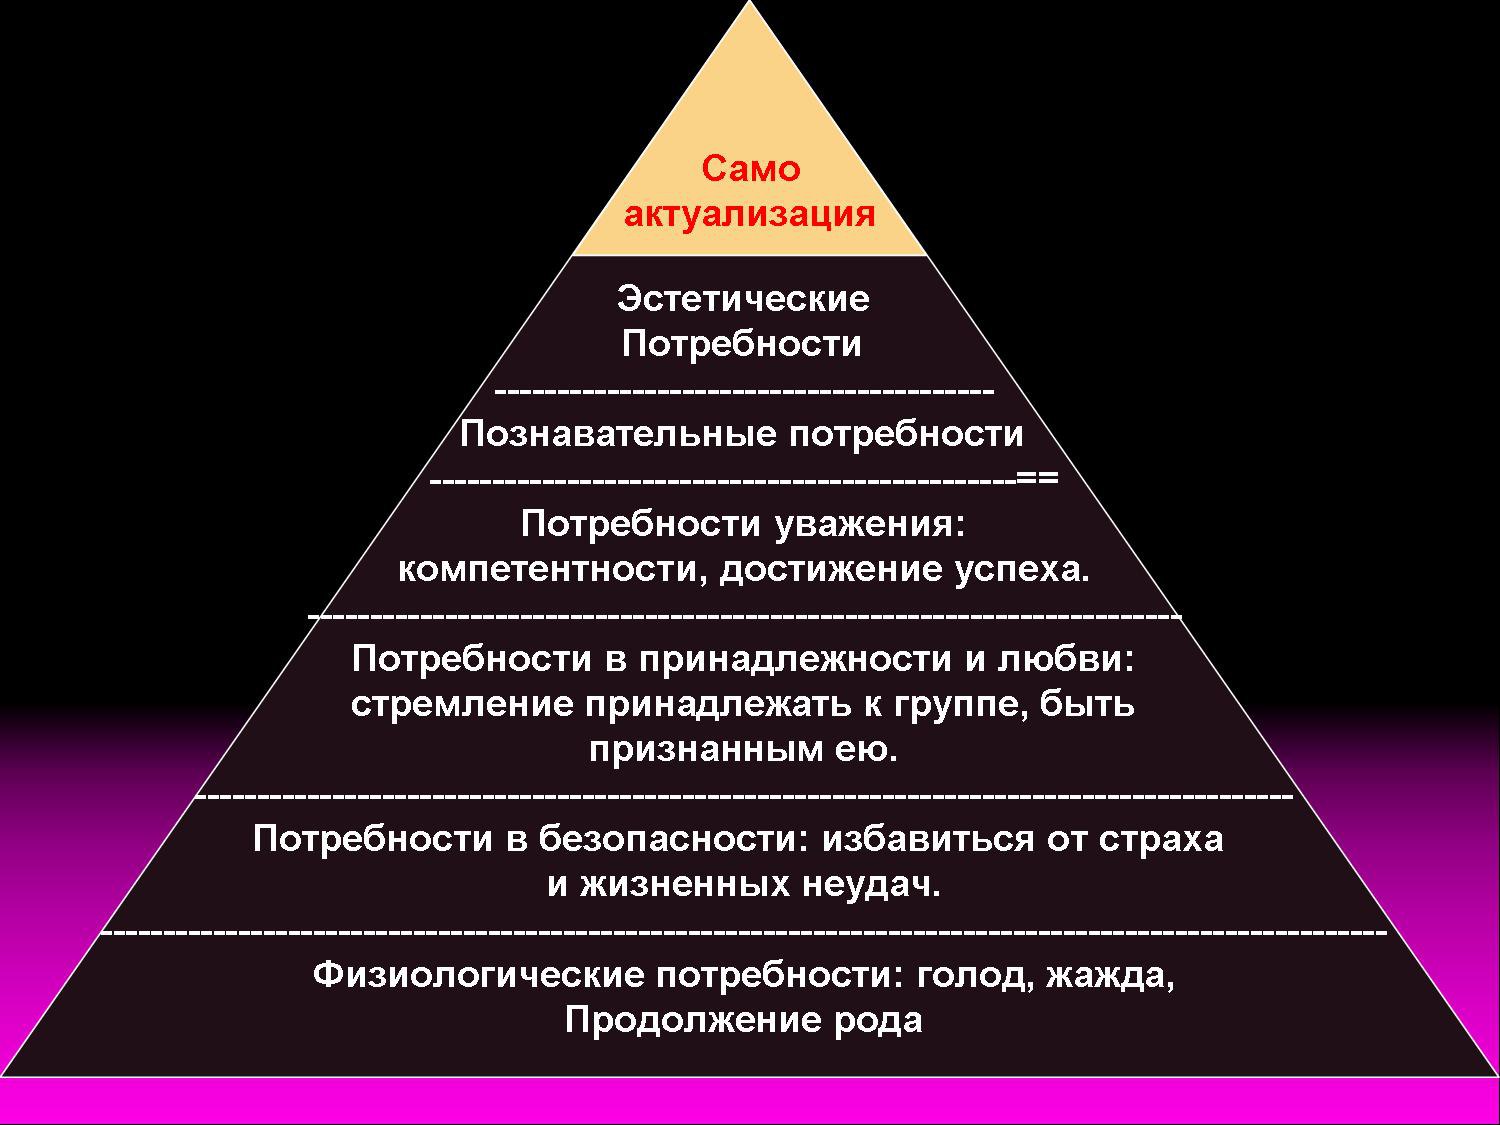 пирамида абрахама маслоу